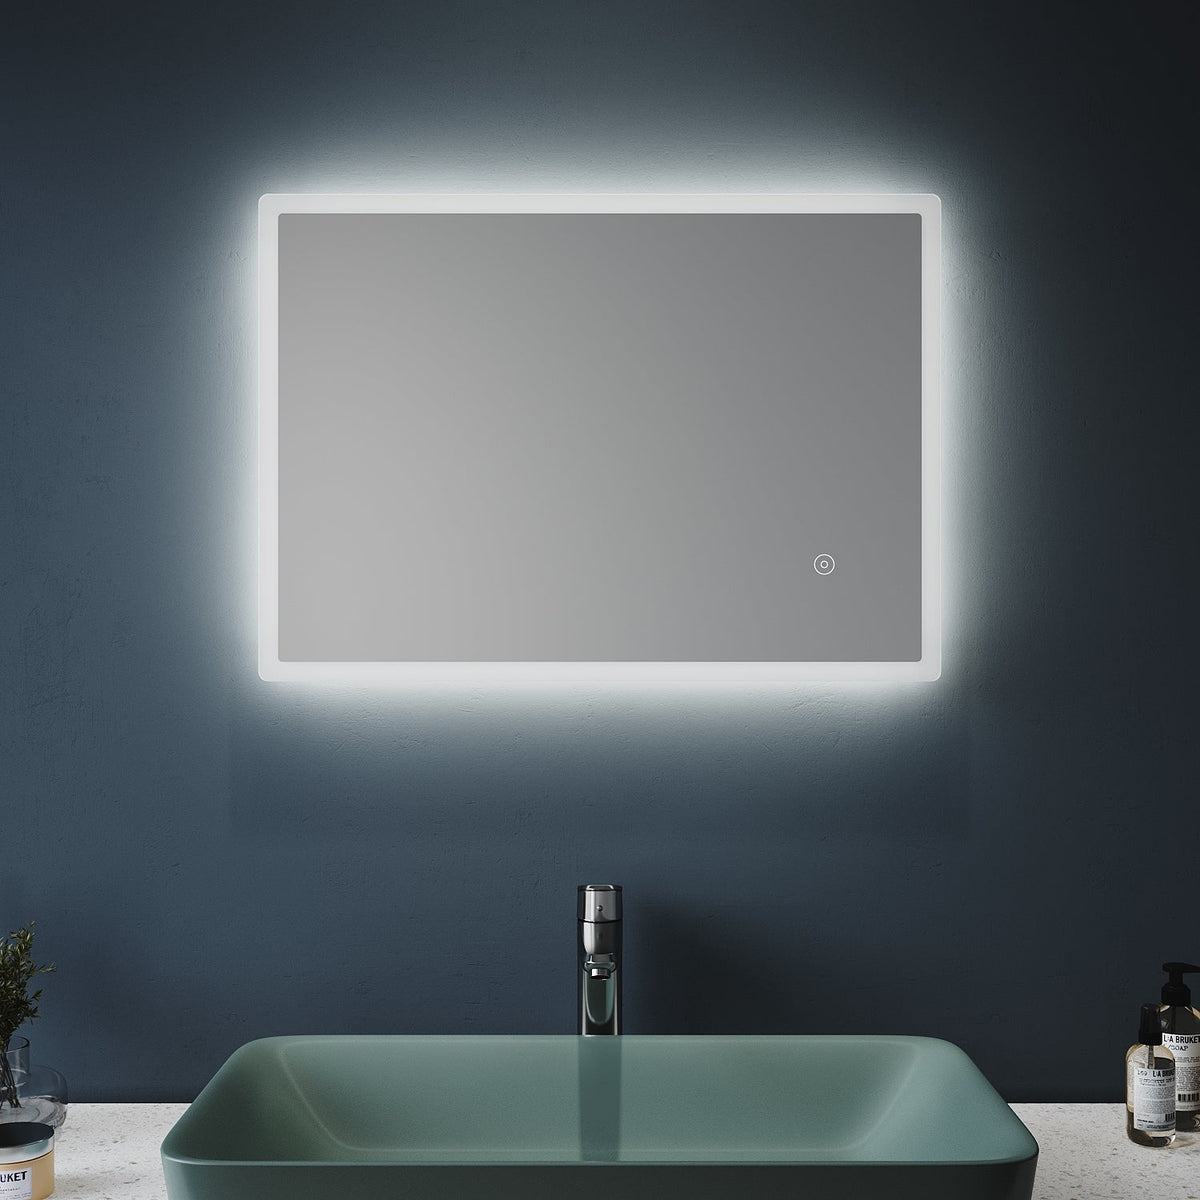 Зеркало для ванной комнаты с подсветкой 50x70см незапотевающее настенное зеркало зеркало для ванной комнаты с сенсорным выключателем холодный белый 6400K зеркало для ванной IP44 энергосберегающее